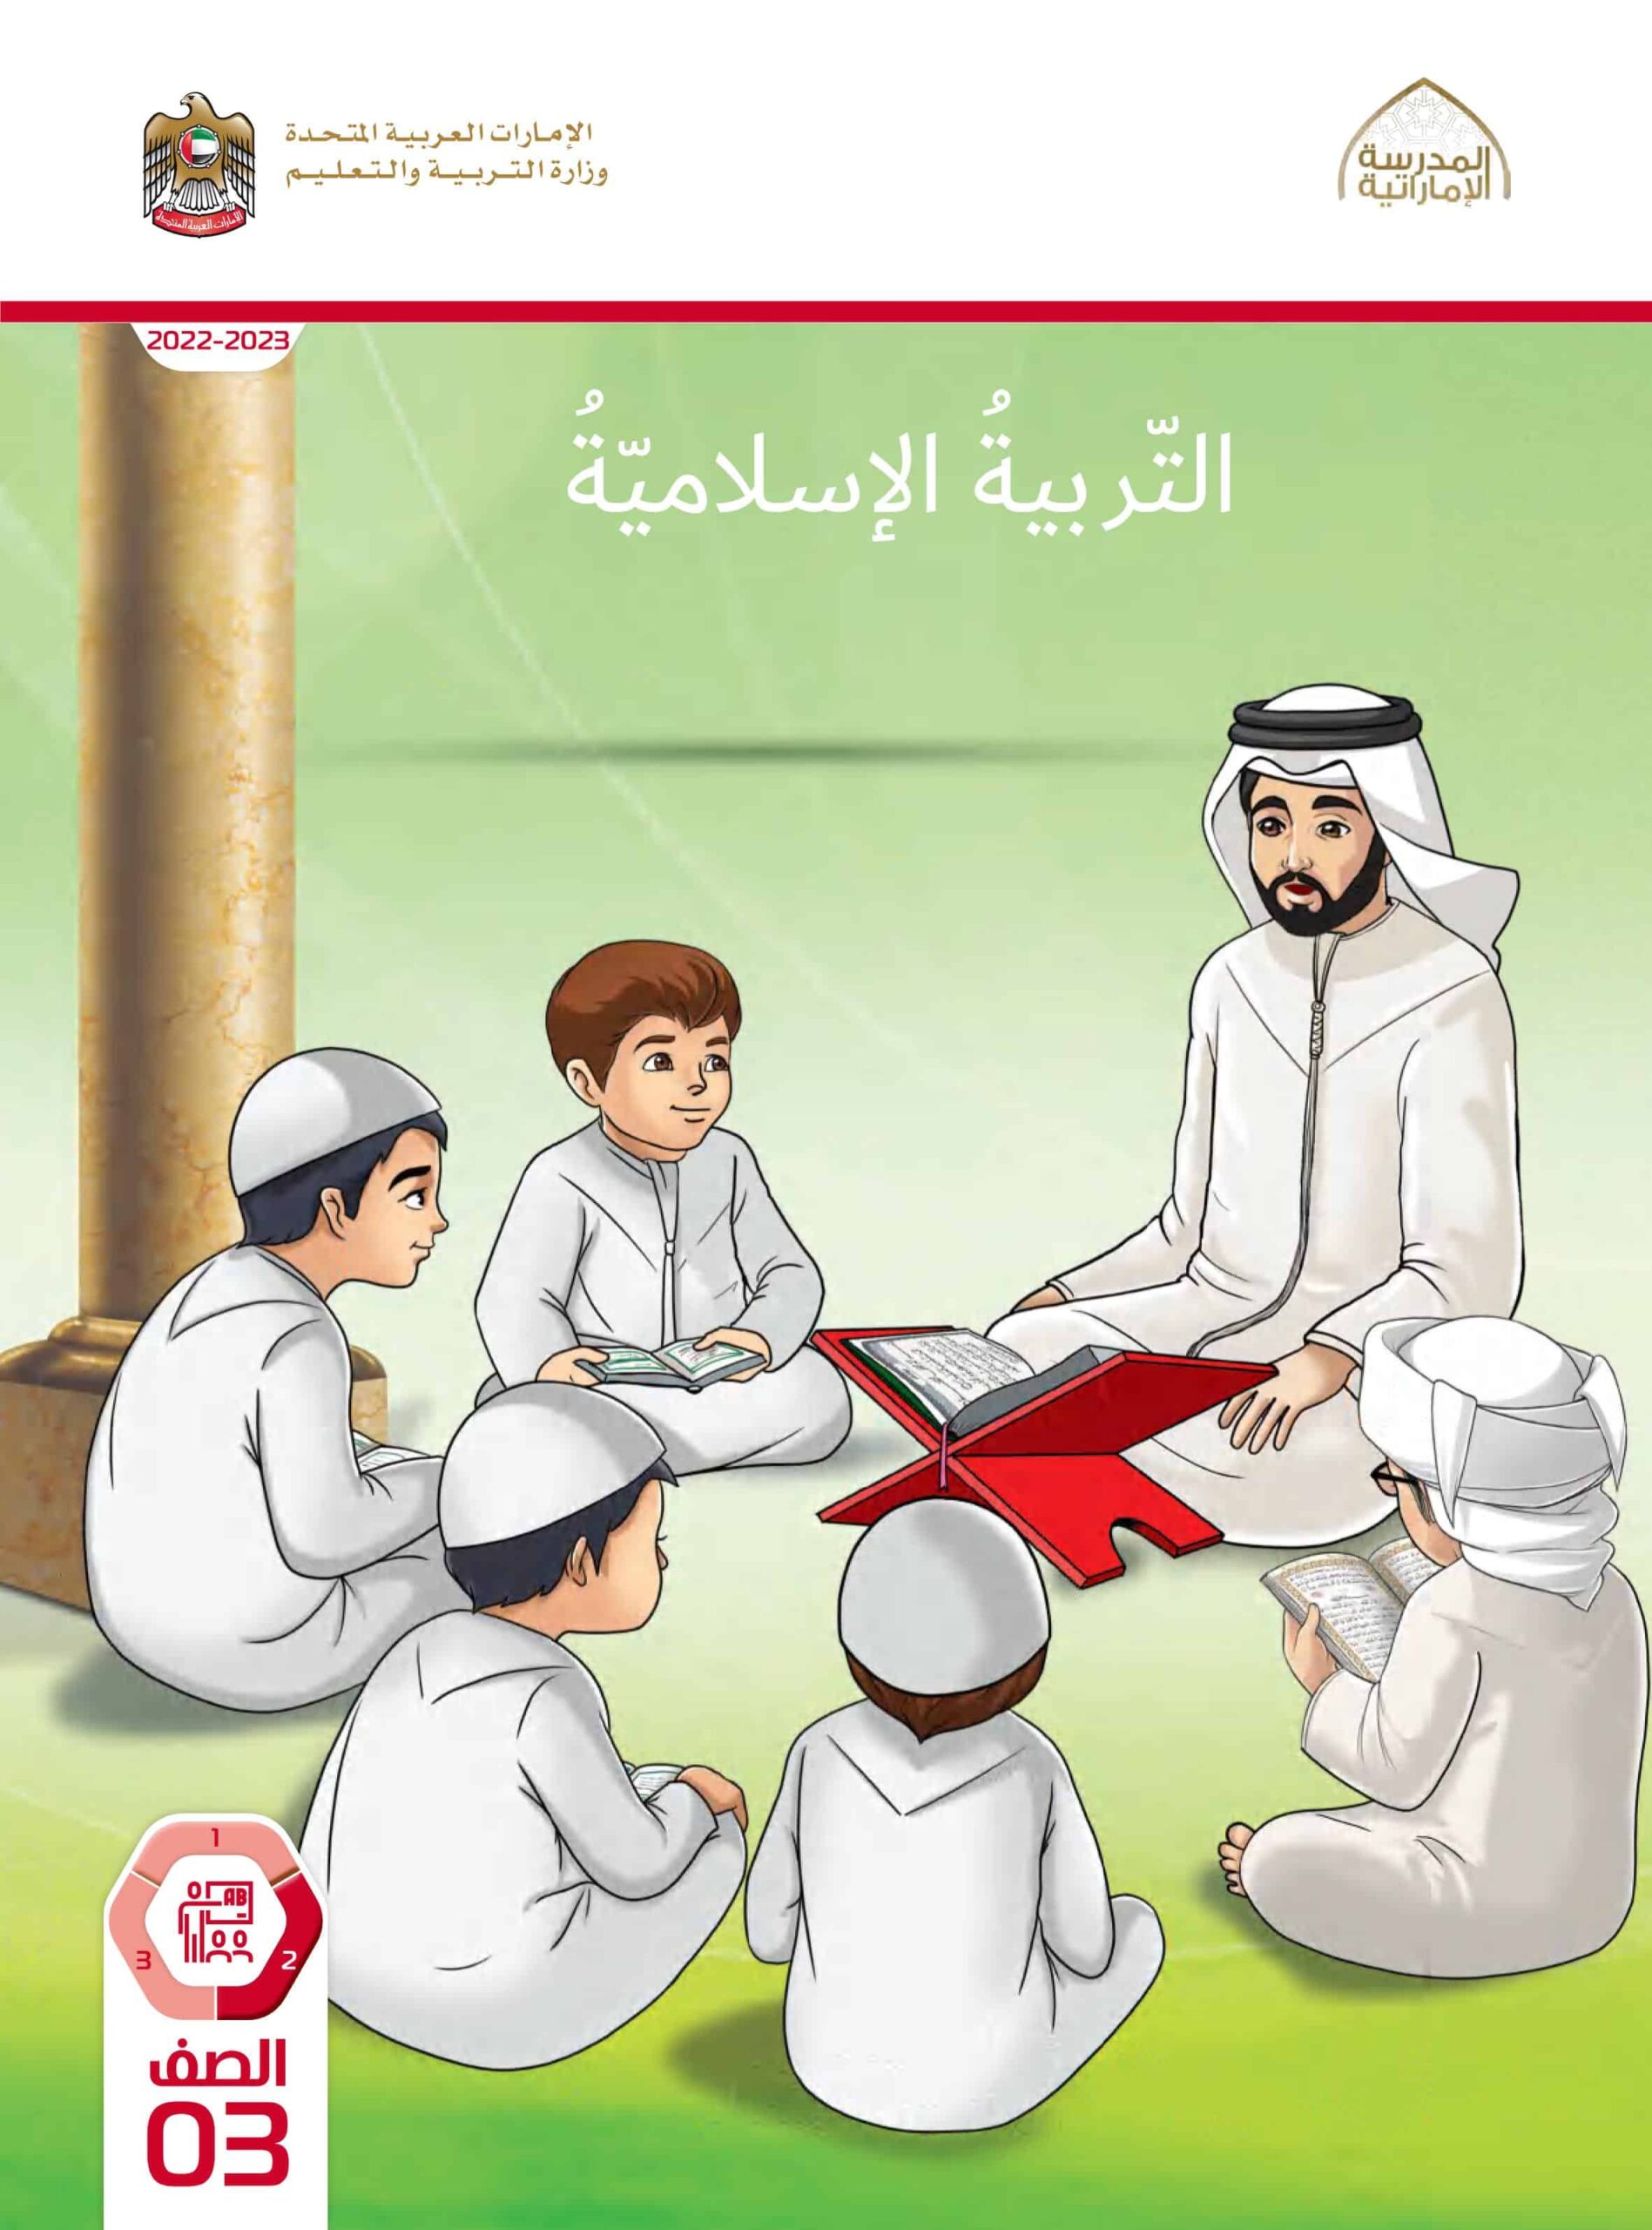 كتاب الطالب التربية الإسلامية الصف الثالث الفصل الدراسي الثاني 2022-2023